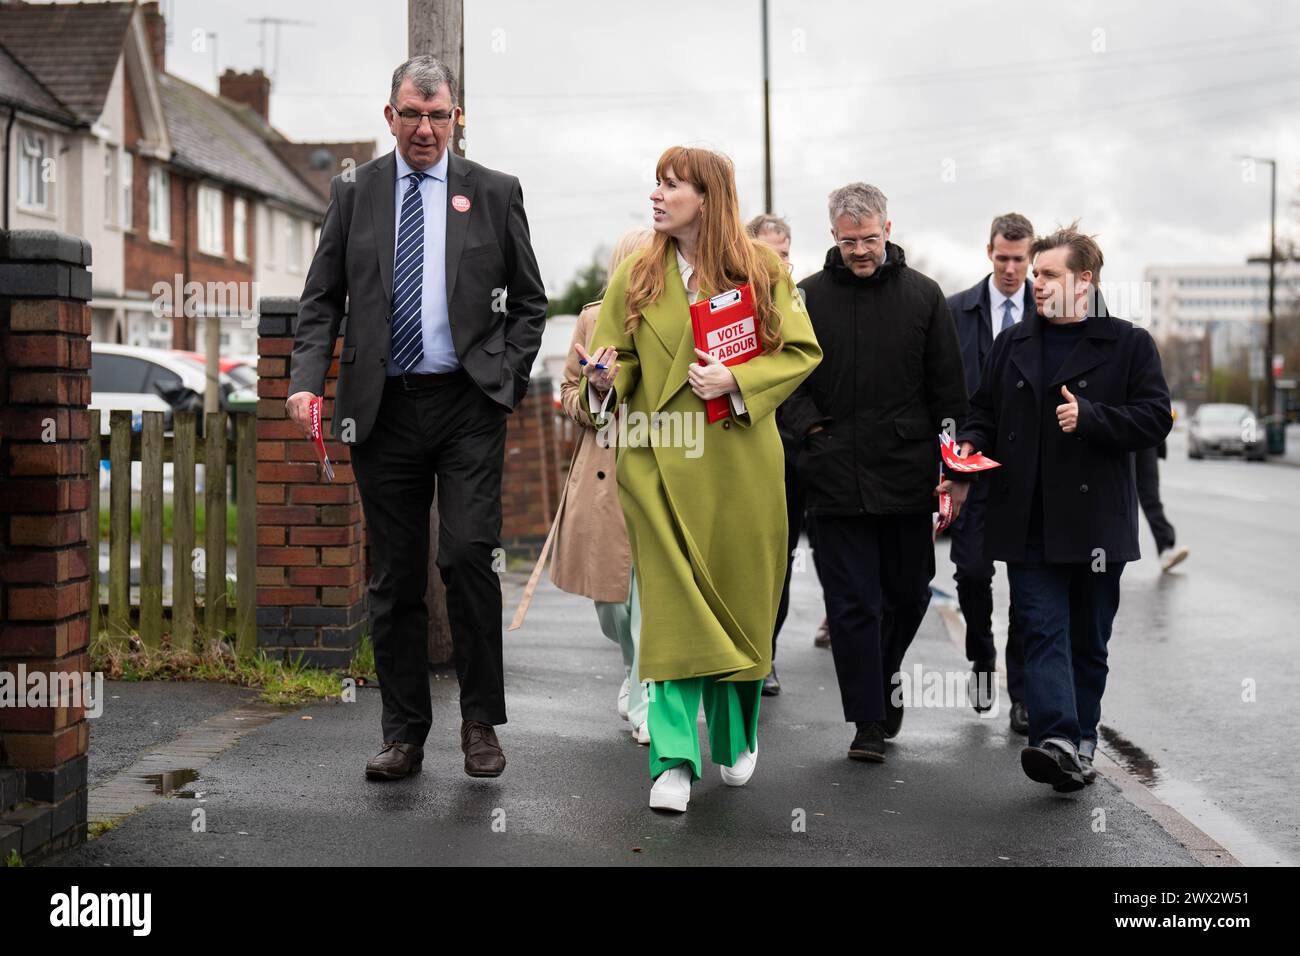 Angela Rayner, stellvertretende Vorsitzende der Labour Party, hat während ihres Treffens mit Bürgermeistern und Bürgermeisterkandidaten der Labour Party auf den Straßen von Birmingham gesessen. Bilddatum: Mittwoch, 27. März 2024. Stockfoto